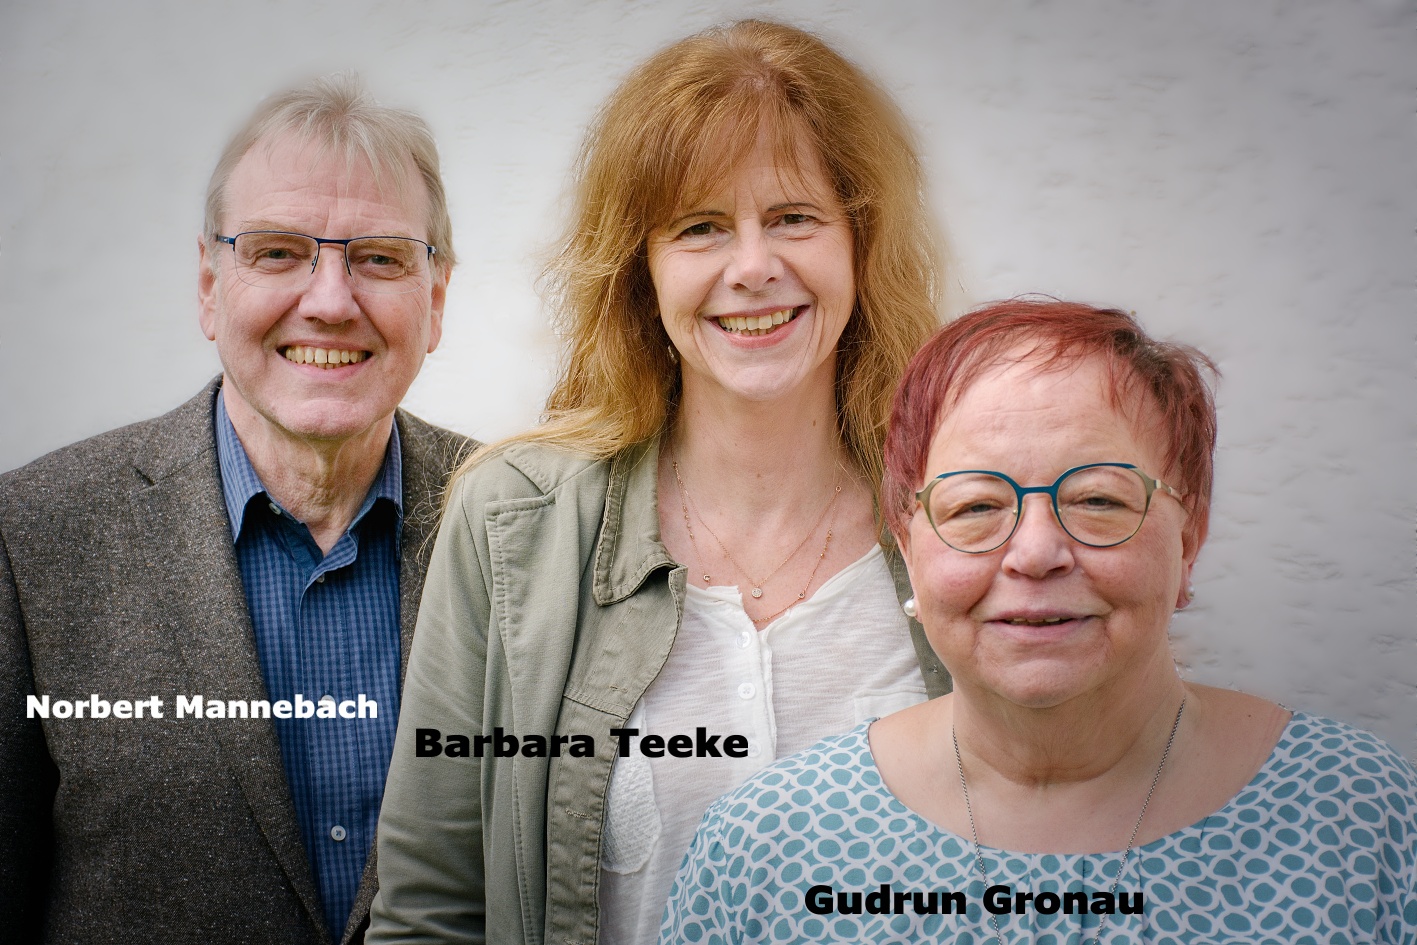 Verantwortlich für die Organisation des KUKloch sind Norbert Mannebach, Finanzen; Barbara Teeke, Sprecherin und Gudrun Gronau, Öffentlichkeitsarbeit.